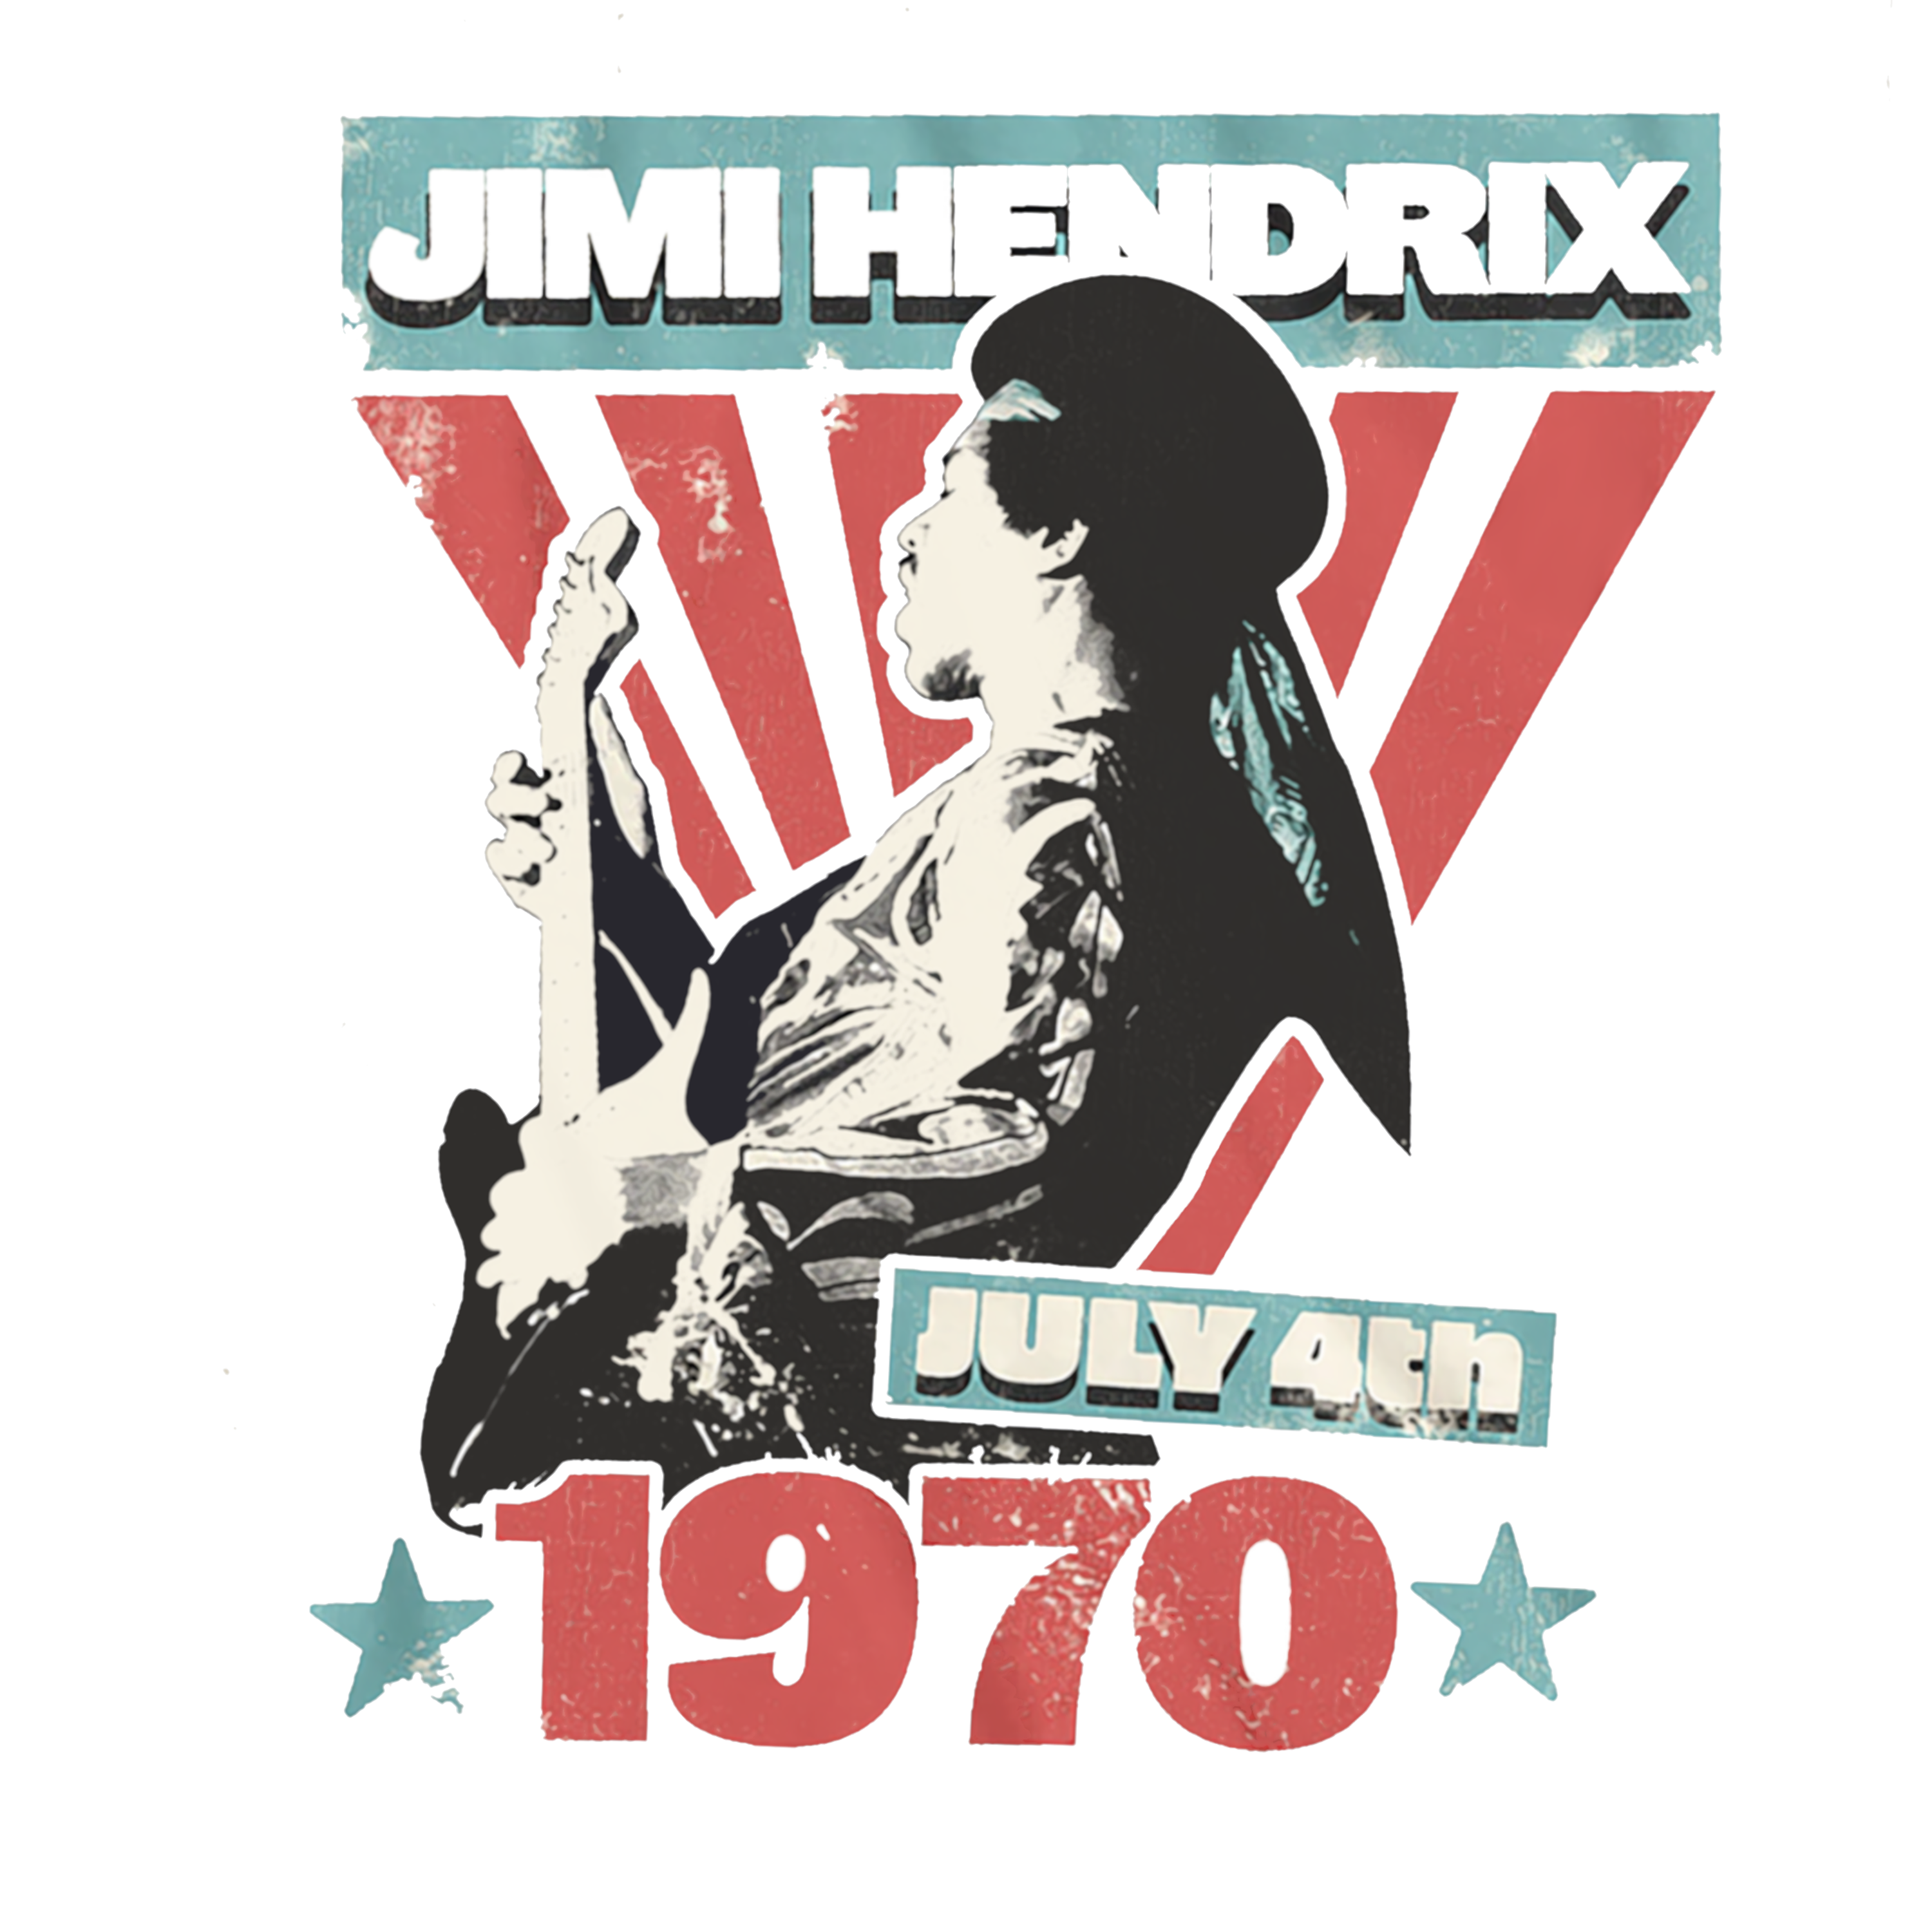 JIMI HENDRIX 1970